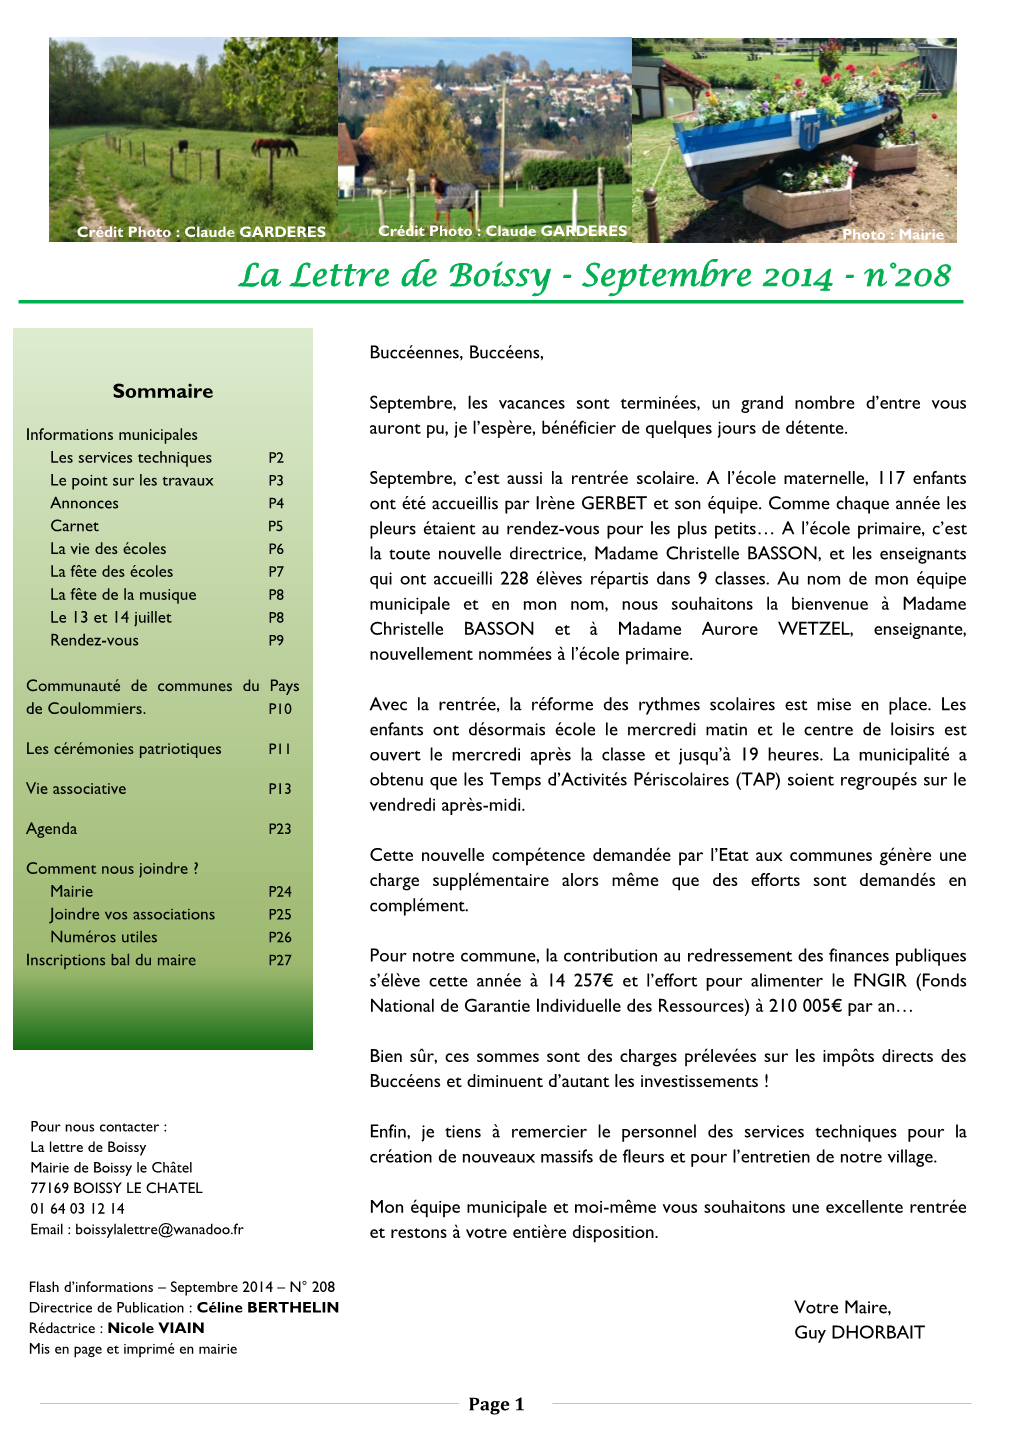 La Lettre De Boissy - Septembre 2014 - N°208